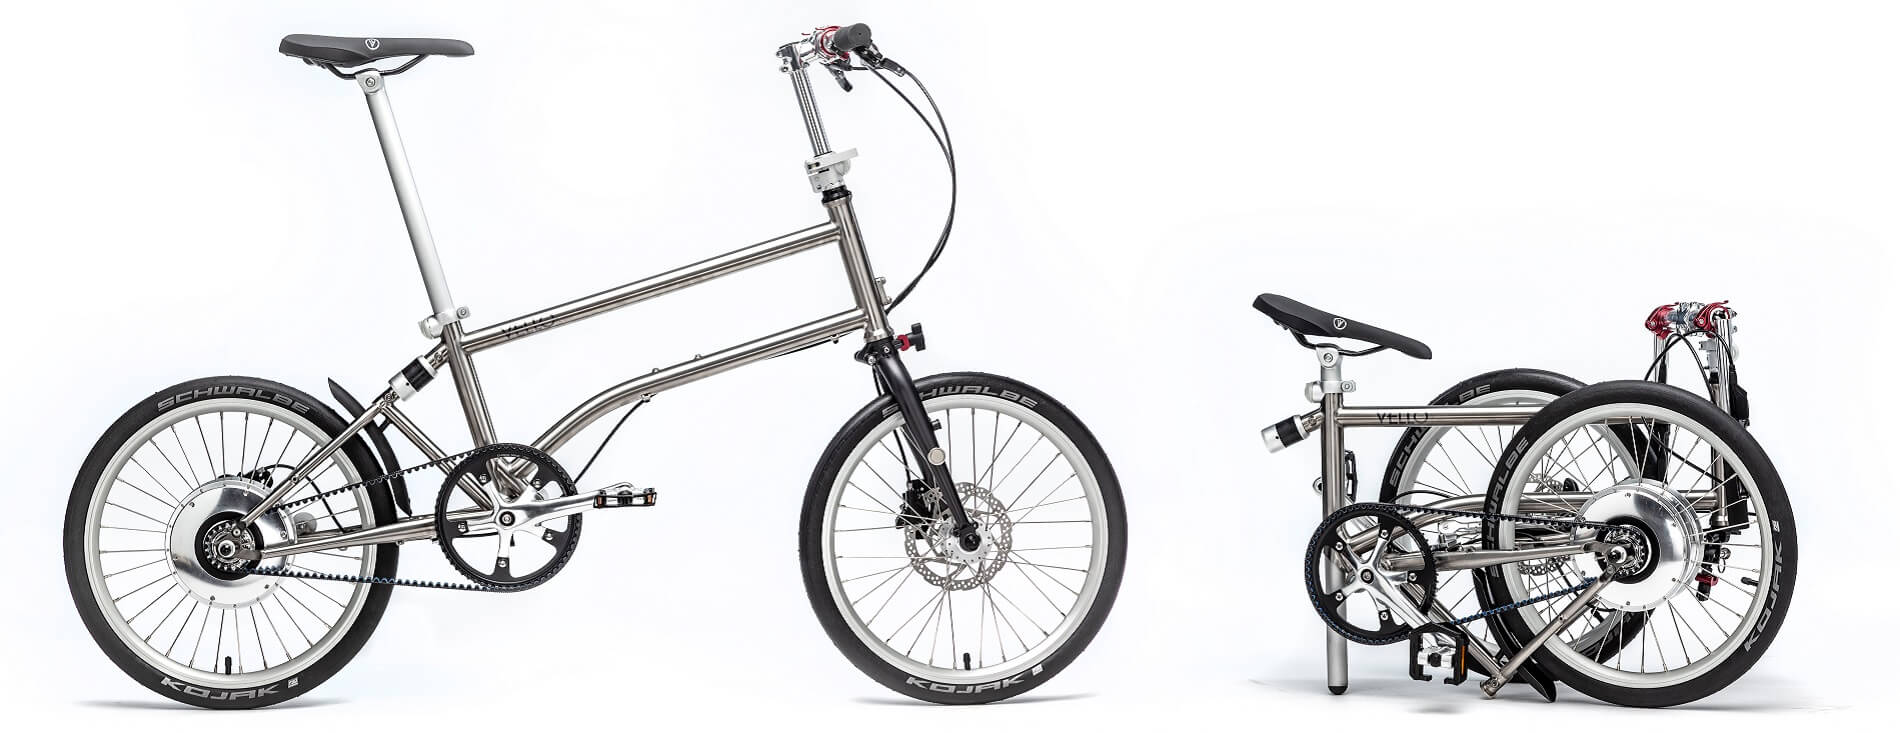 VELLO bike folding ebike technology innovation